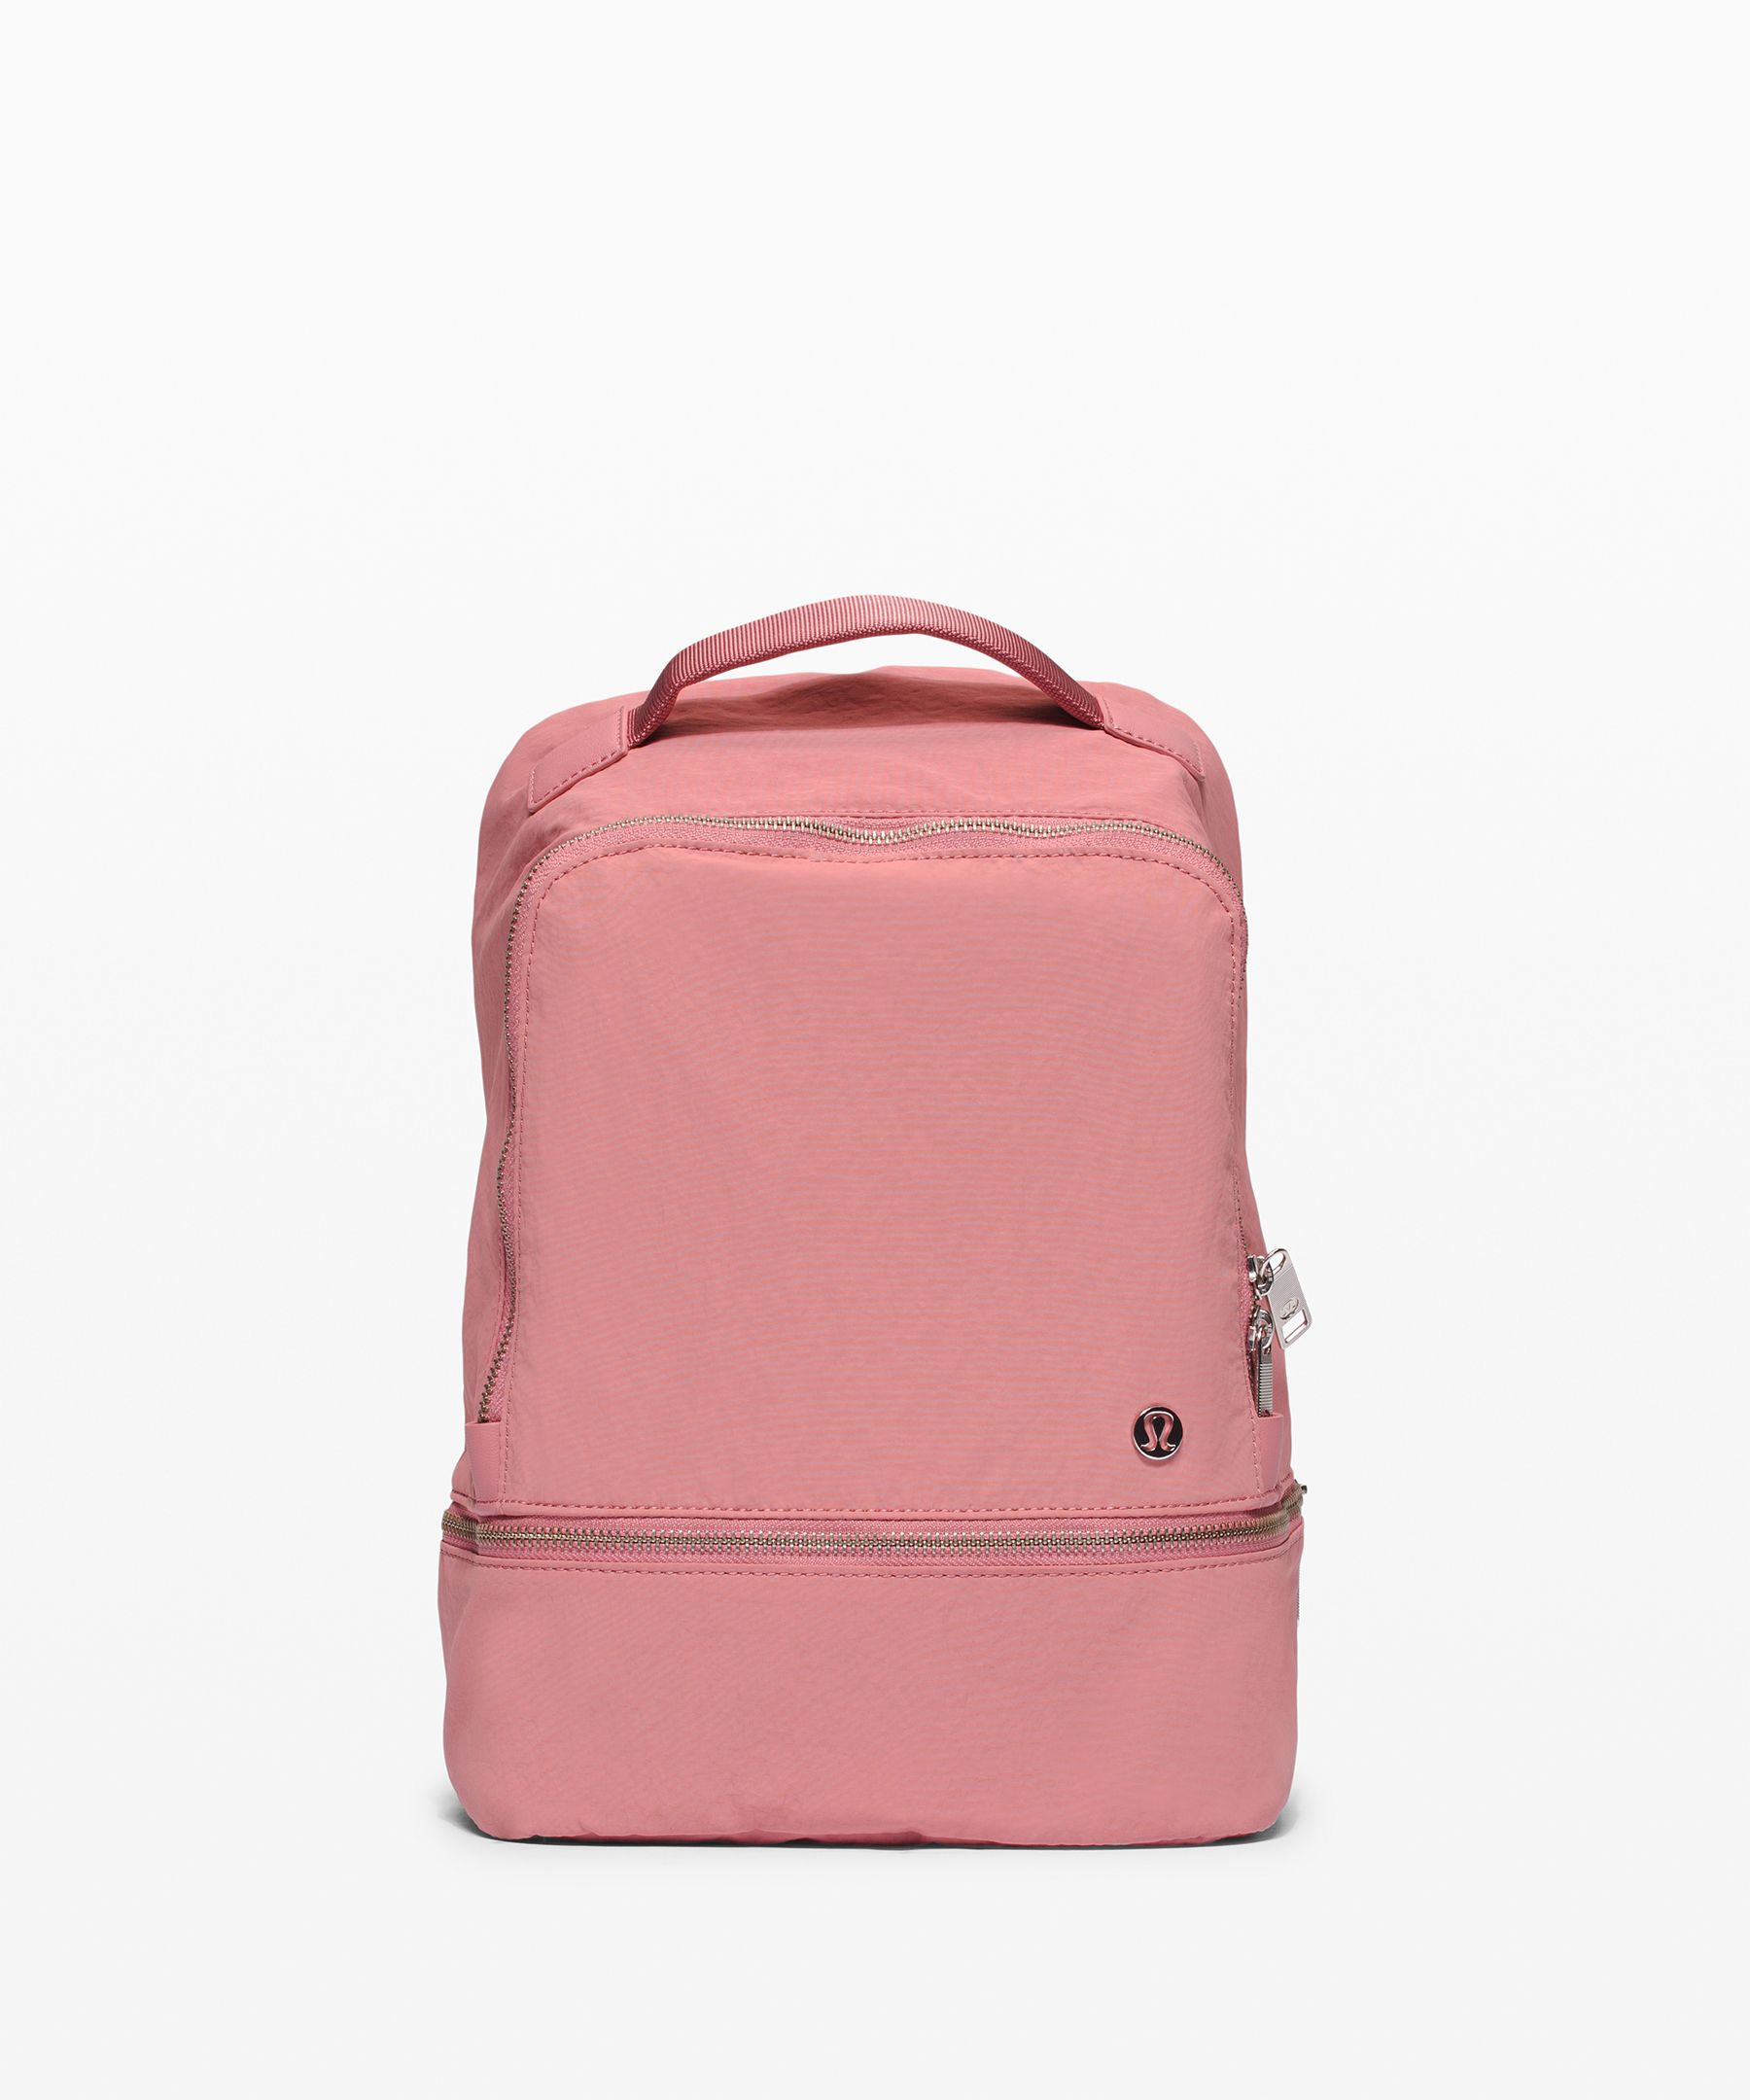 city adventurer mini backpack